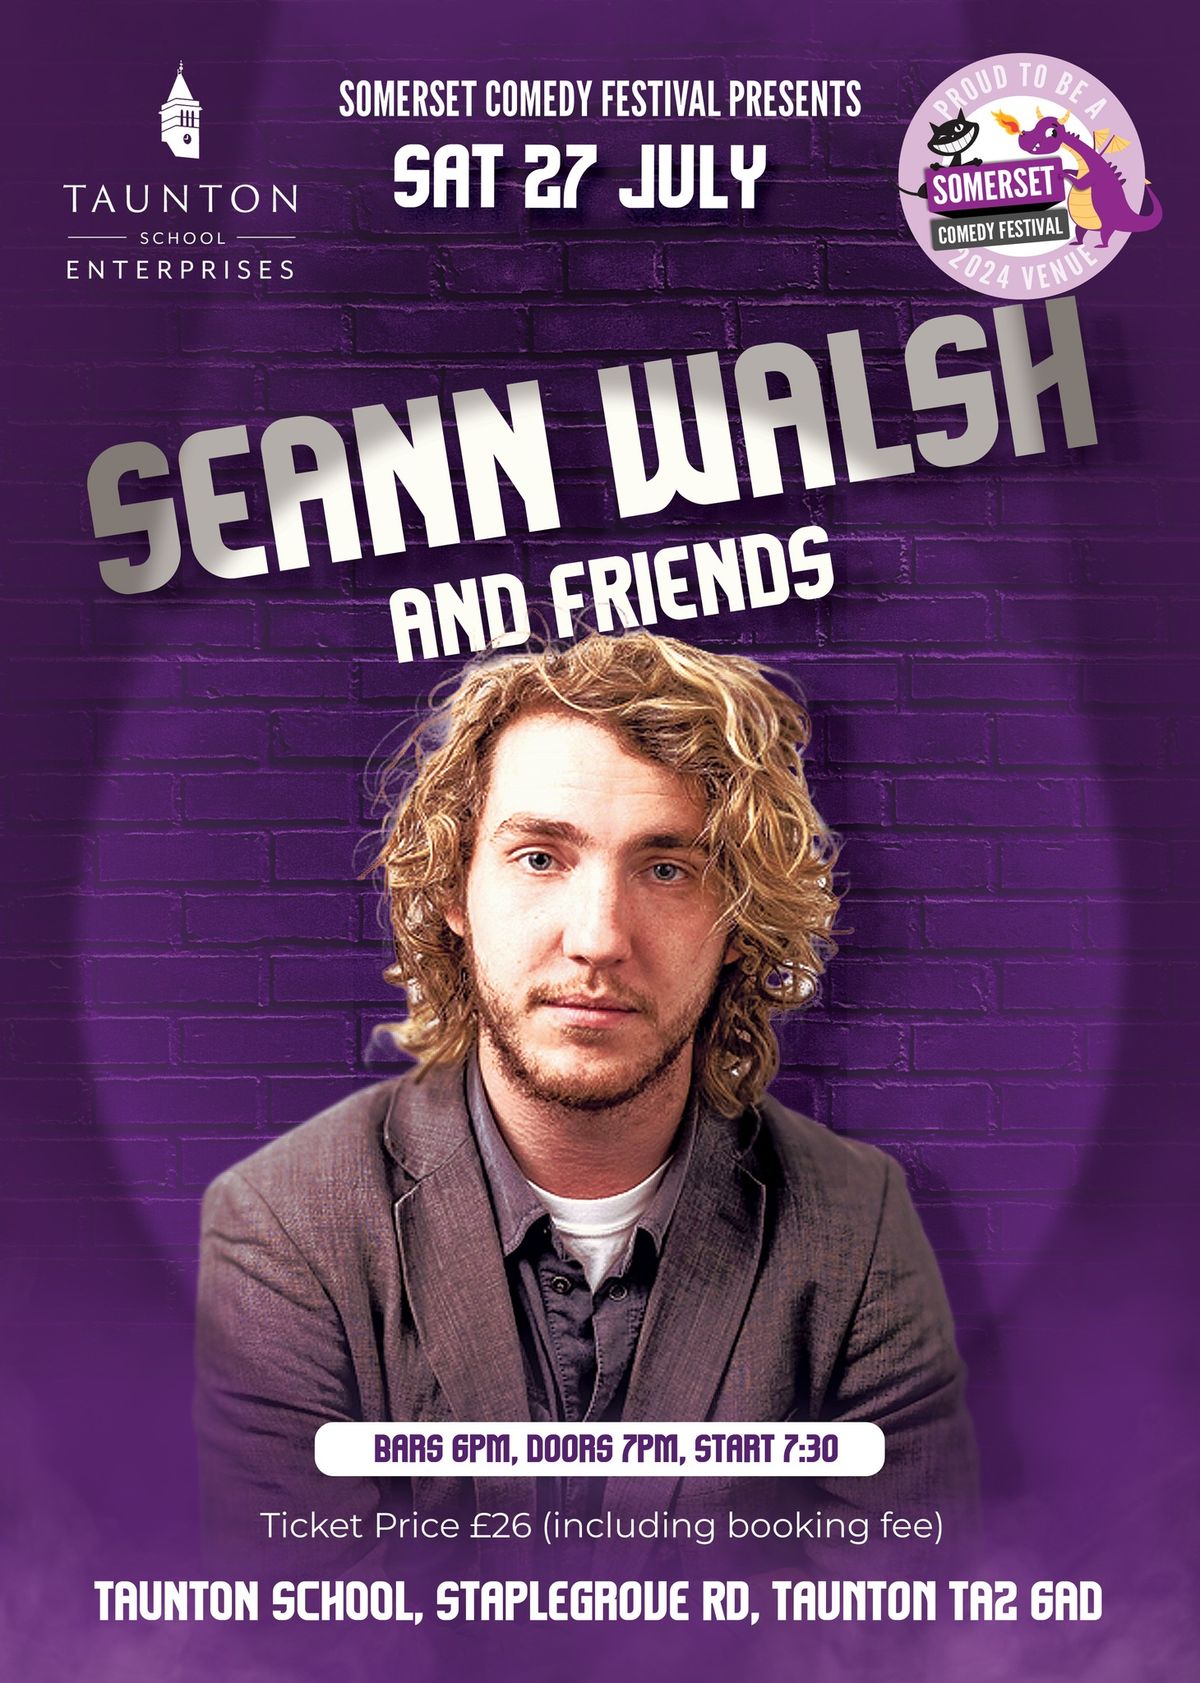 Somerset Comedy Festival - Seann Walsh & Friends